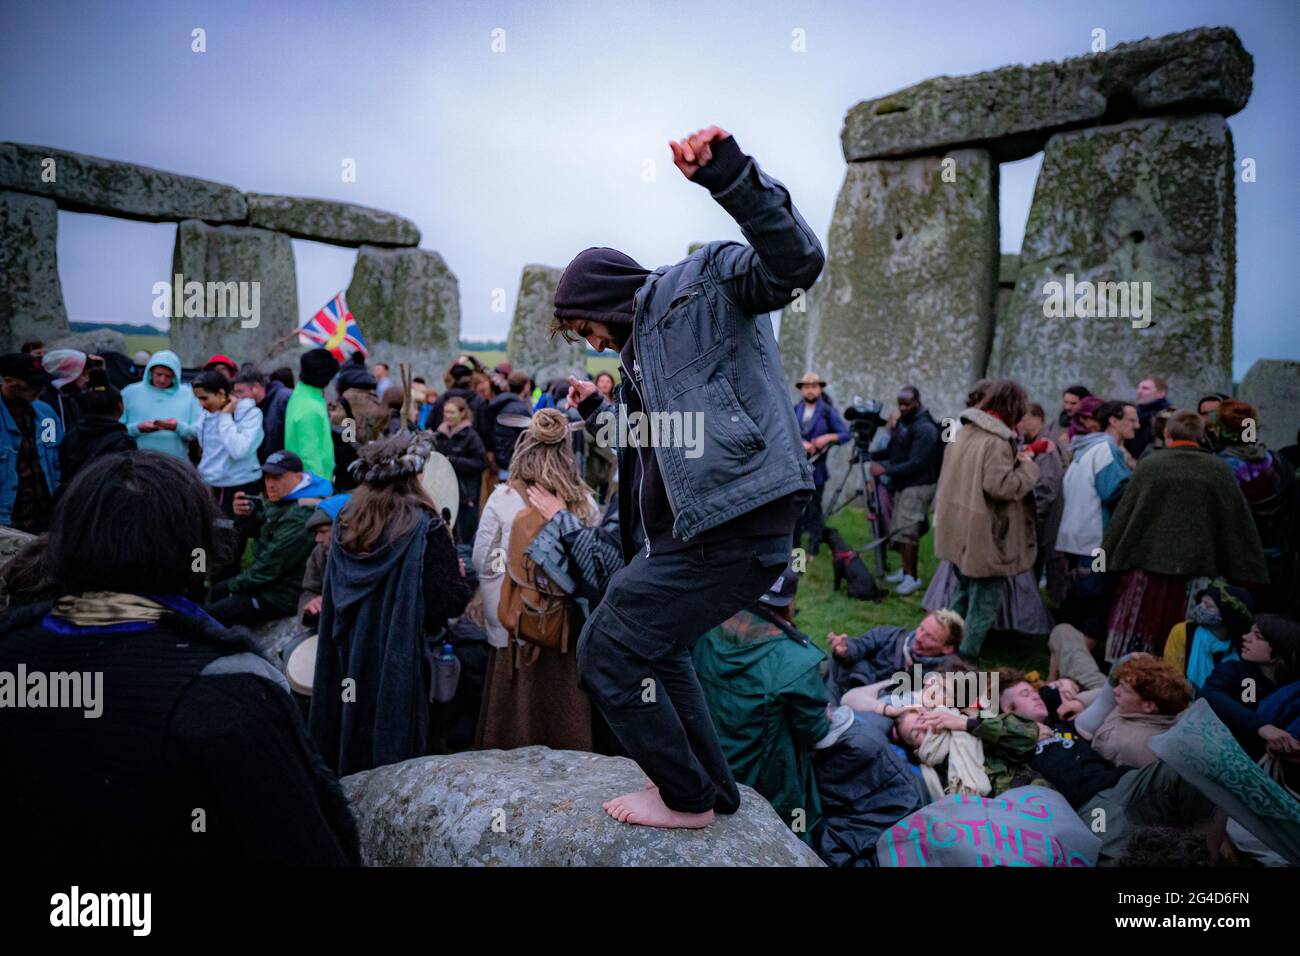 Menschen im Steinkreis während der Sommersonnenwende in Stonehenge, wo einige Menschen über den Zaun sprangen, um den Platz zu betreten und den Sonnenaufgang am längsten Tag in Großbritannien zu beobachten. Die Steine wurden für die Feierlichkeiten, bei denen große Menschenmengen im Kreis zu sehen sind, aufgrund der Coronavirus-Lockdown-Erweiterung offiziell geschlossen. Bilddatum: Montag, 21. Juni 2021. Stockfoto